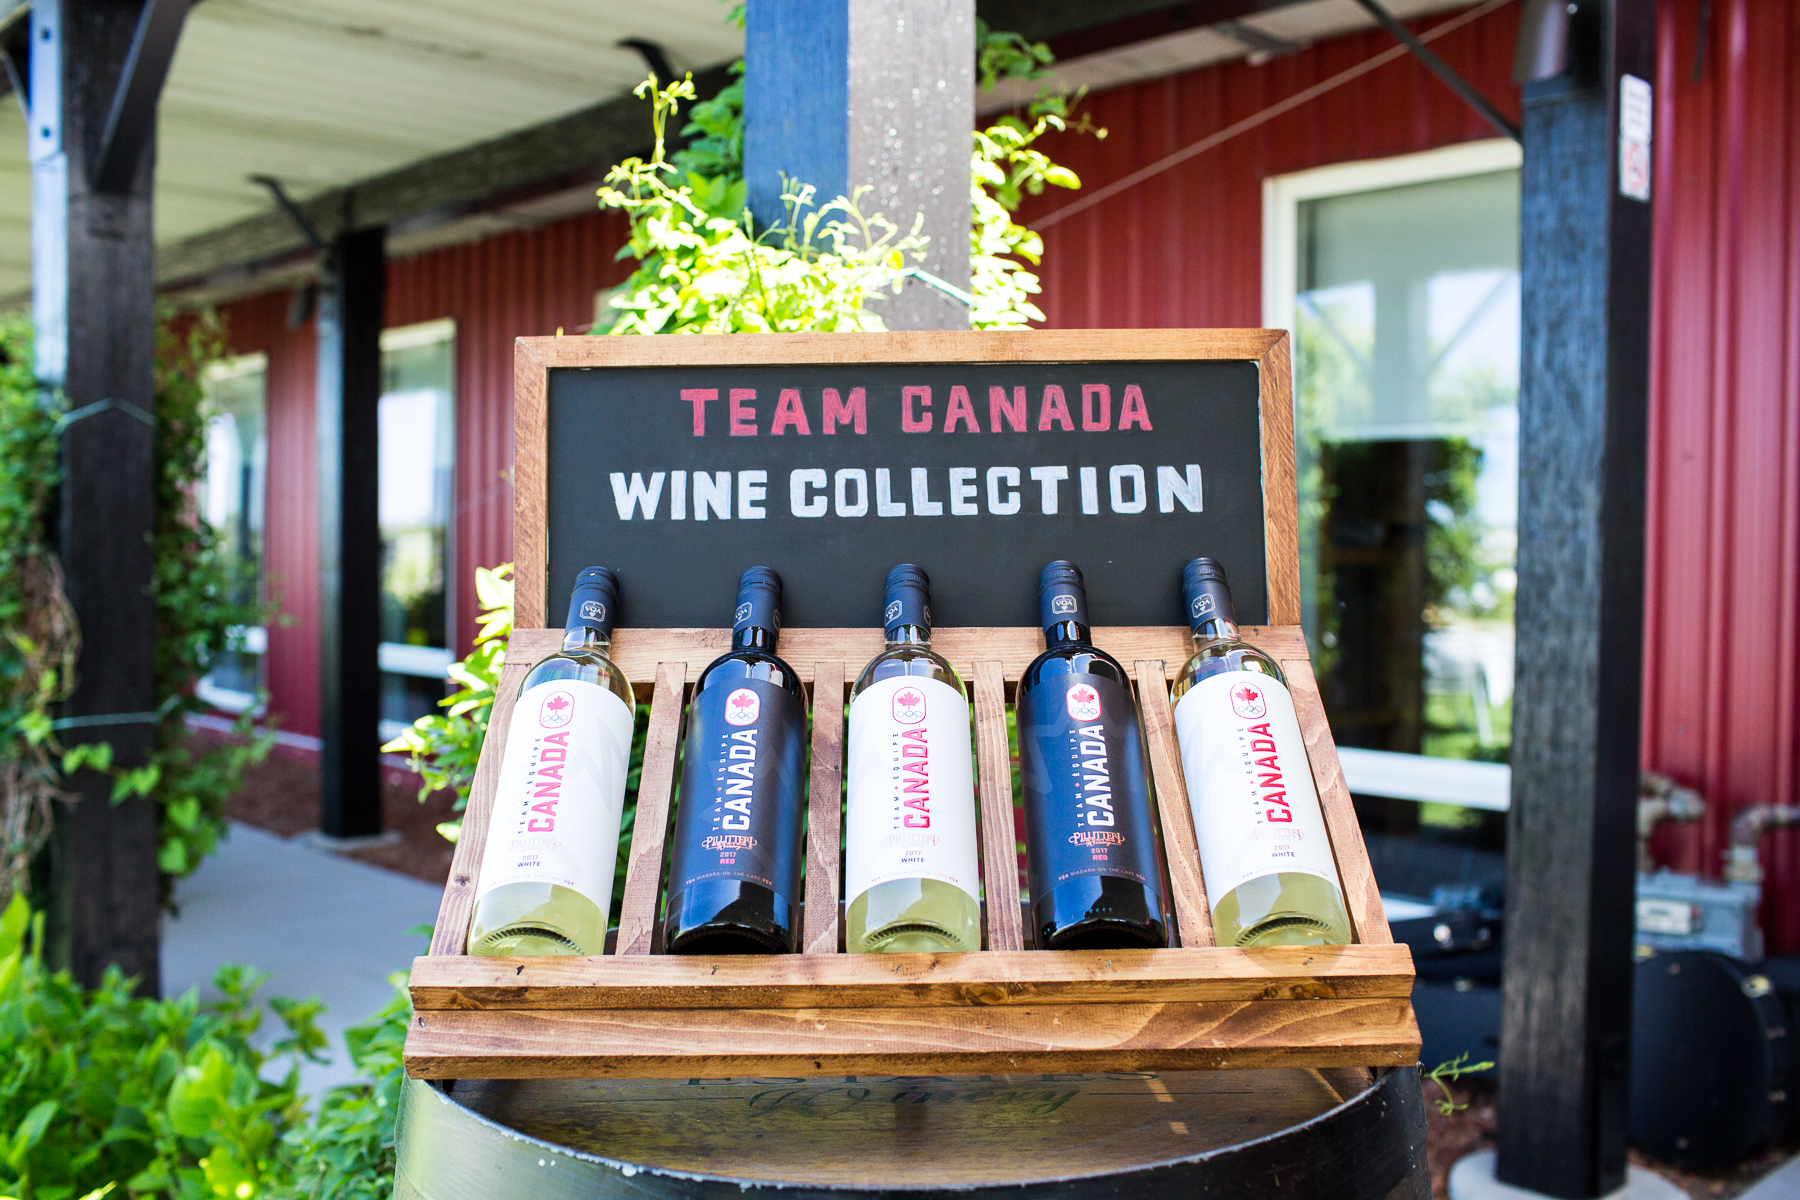 Team Canada Wines